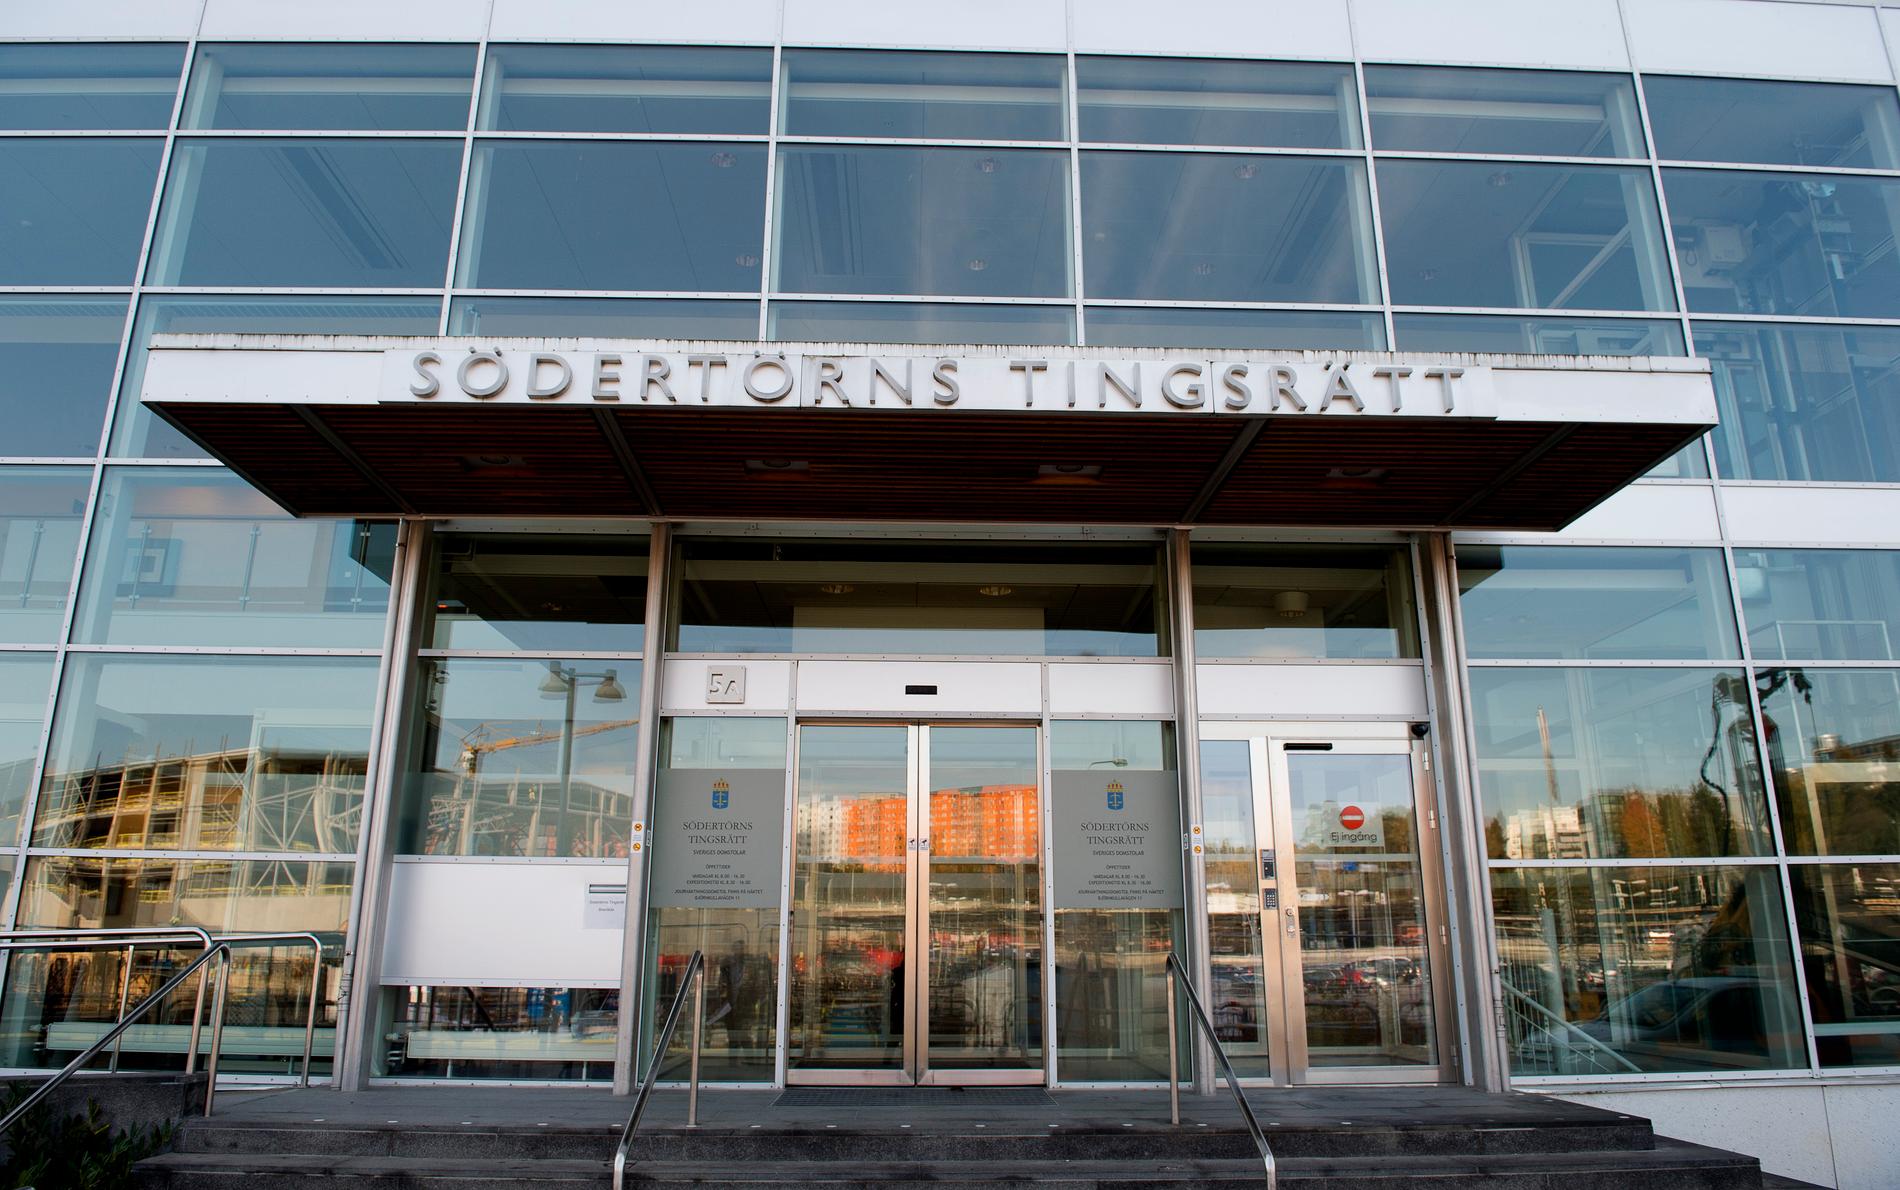 Den dömde rapparen lånade en sal på Södertörns tingsrätt för att spela in sin musikvideo i. Nu ska rutinerna ändras, säger domstolschef Eva-Lena Norgren.